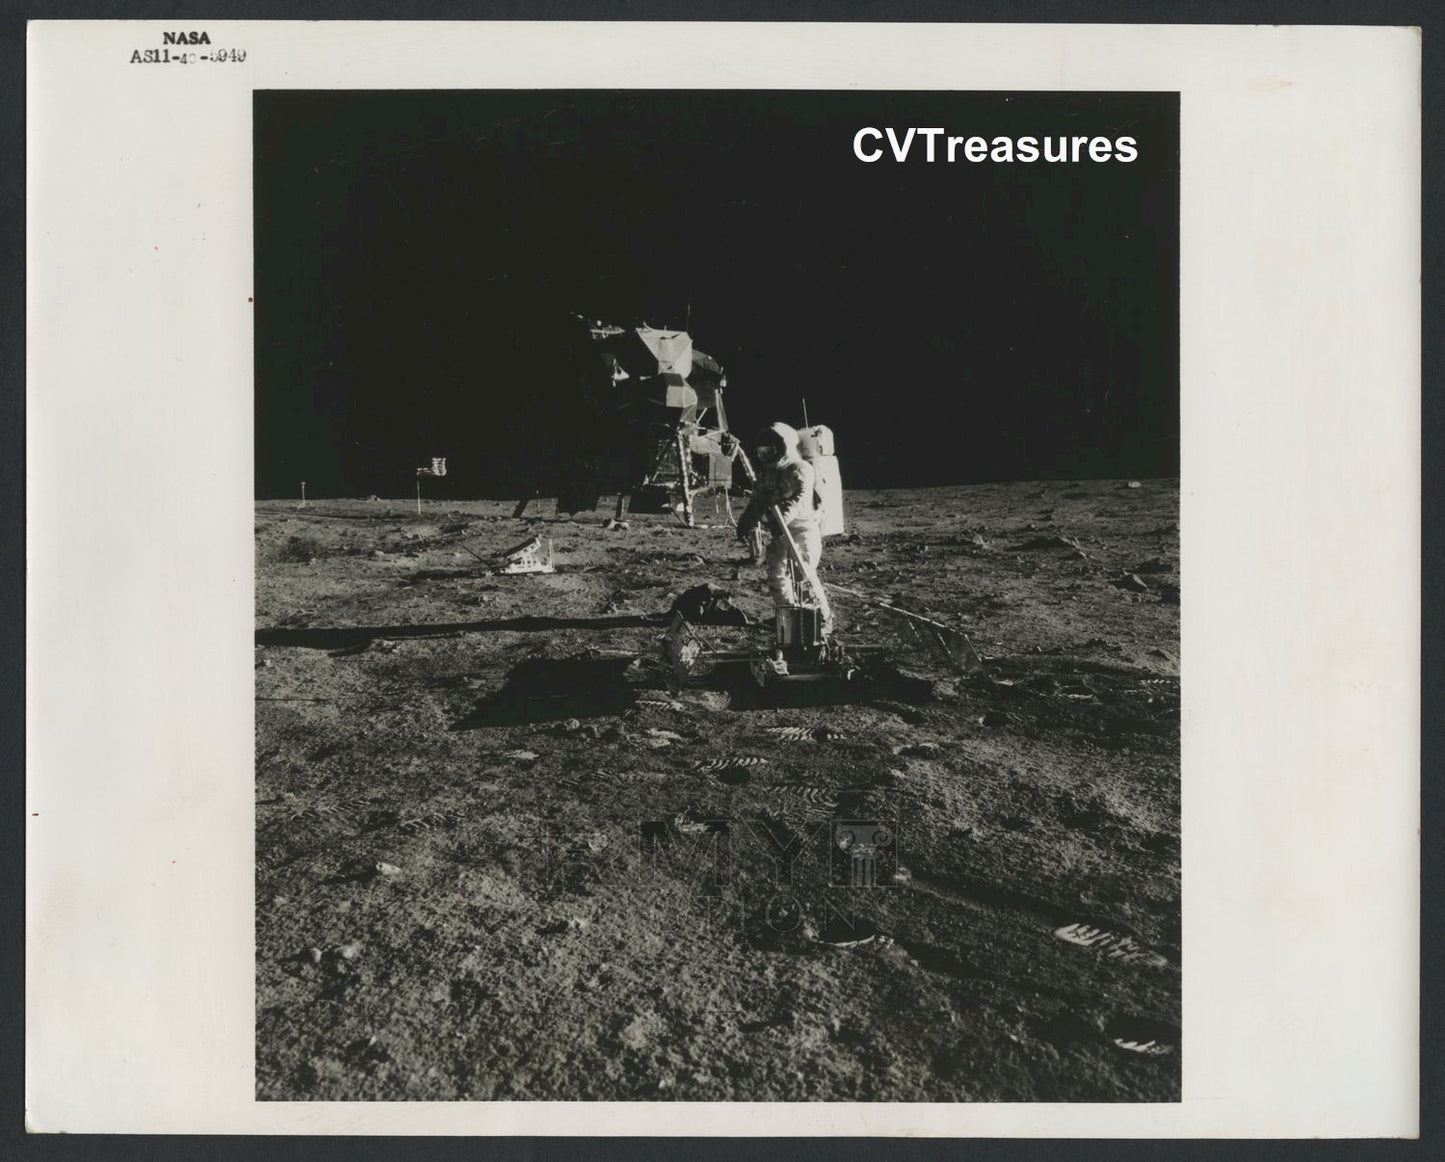 Buzz Aldrin Original Vintage Space TYPE I Historic Photo on the Moon Apollo 11